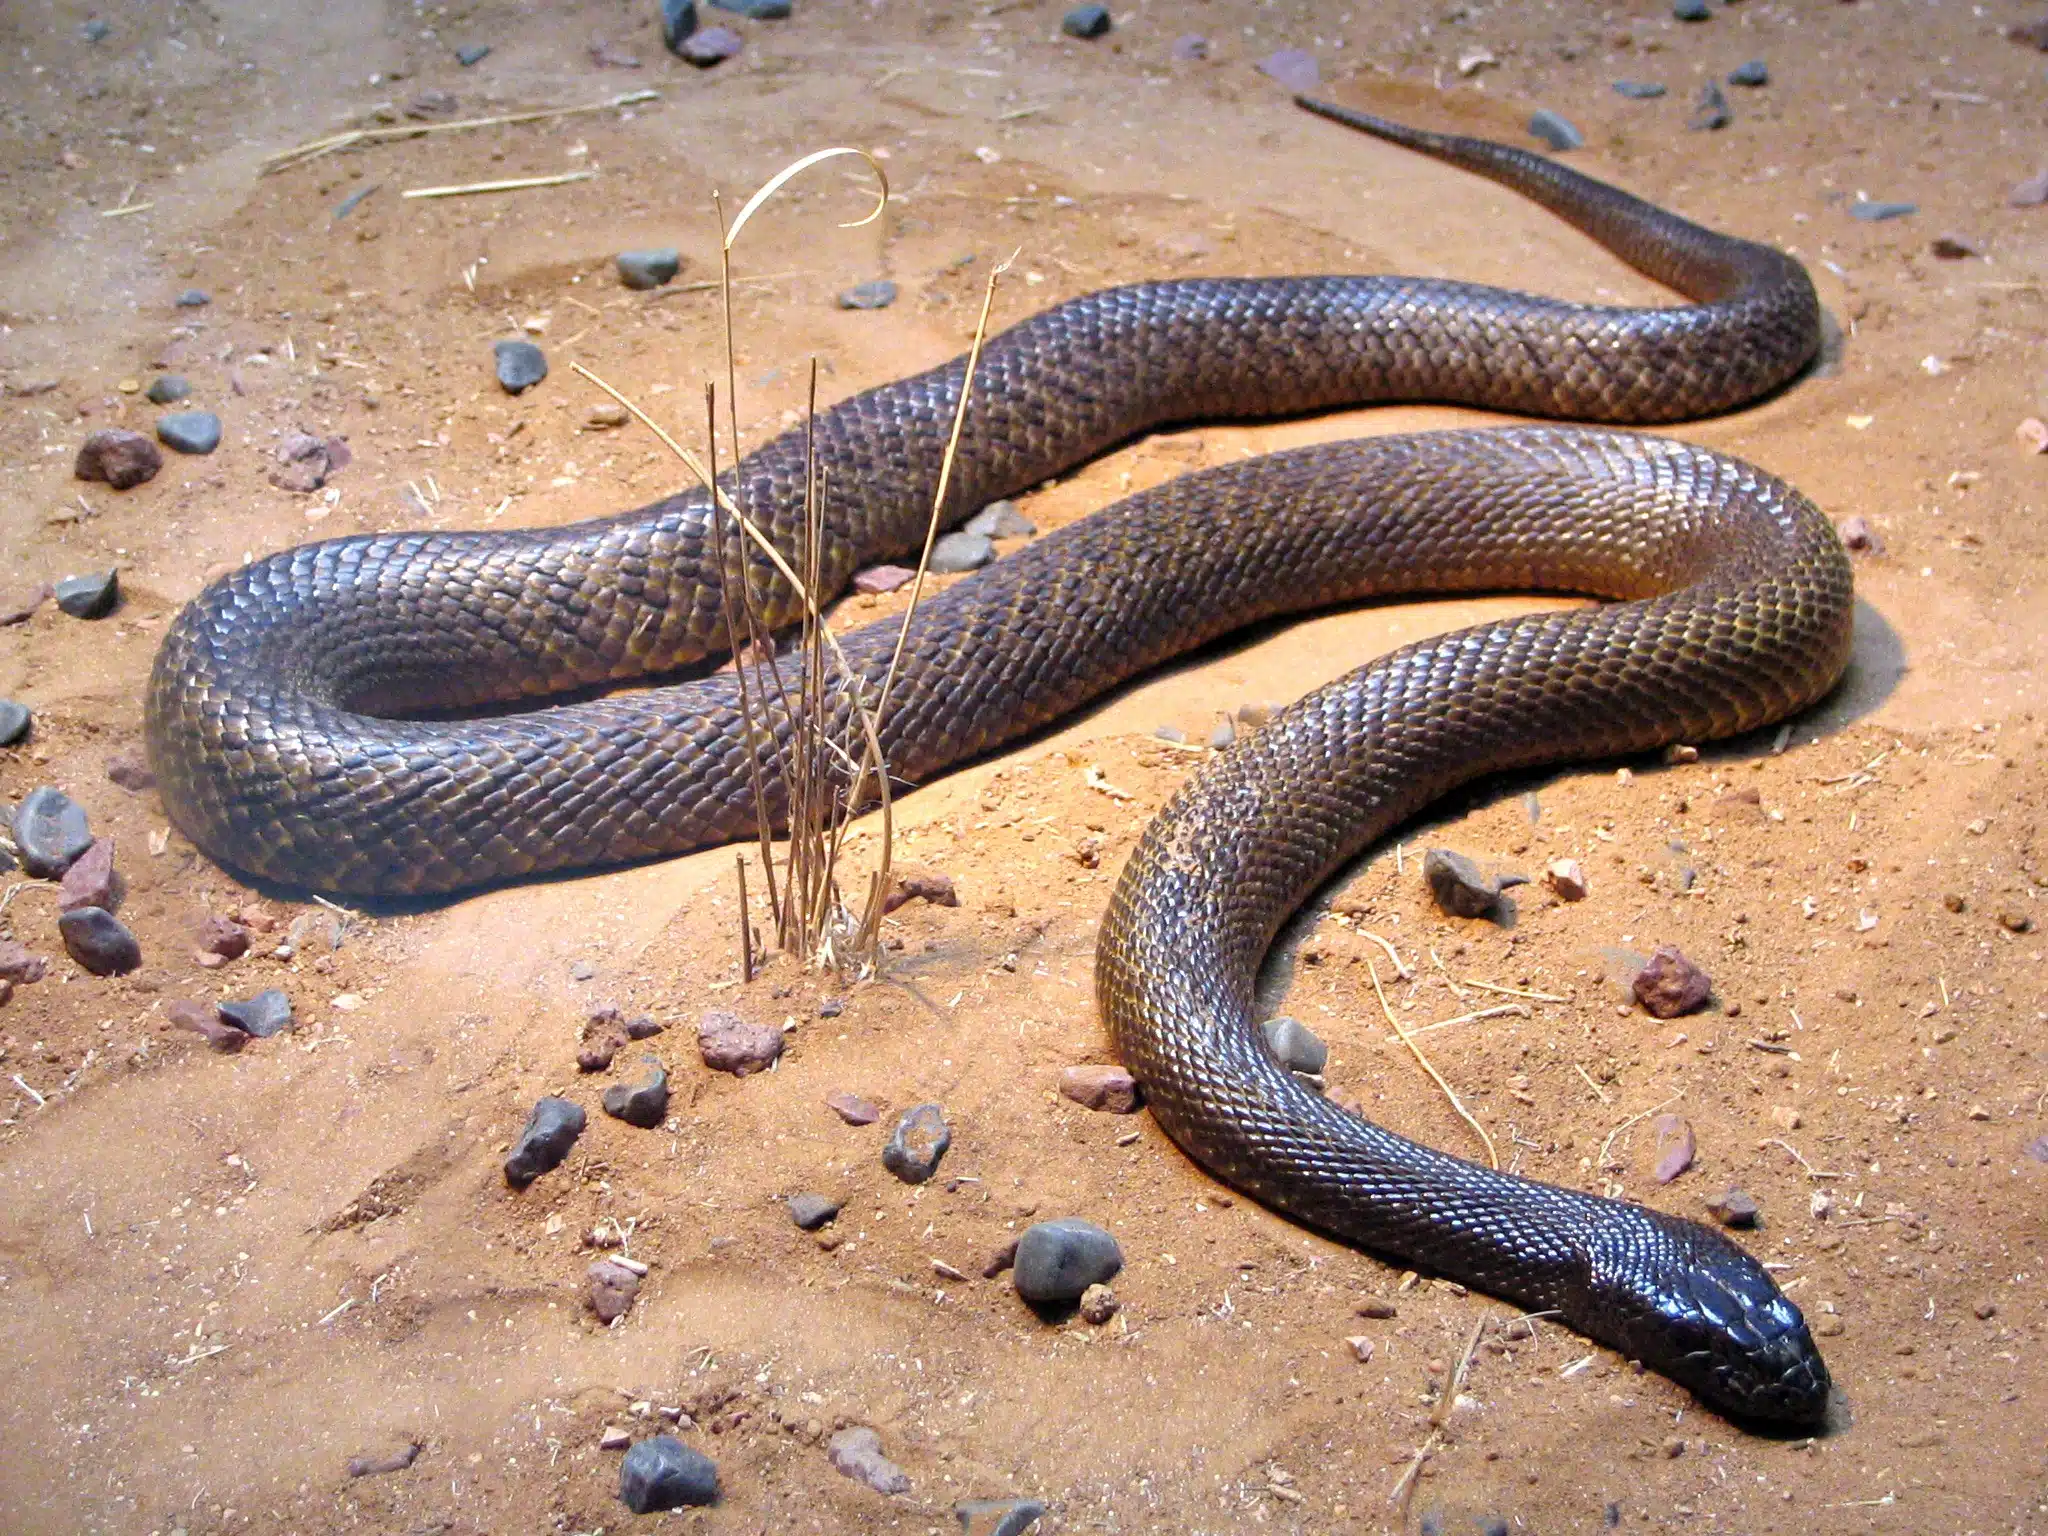 מה הנחש הכי ארסי בעולם ובישראל? - רשימת 8 הנחשים הארסיים ביותר